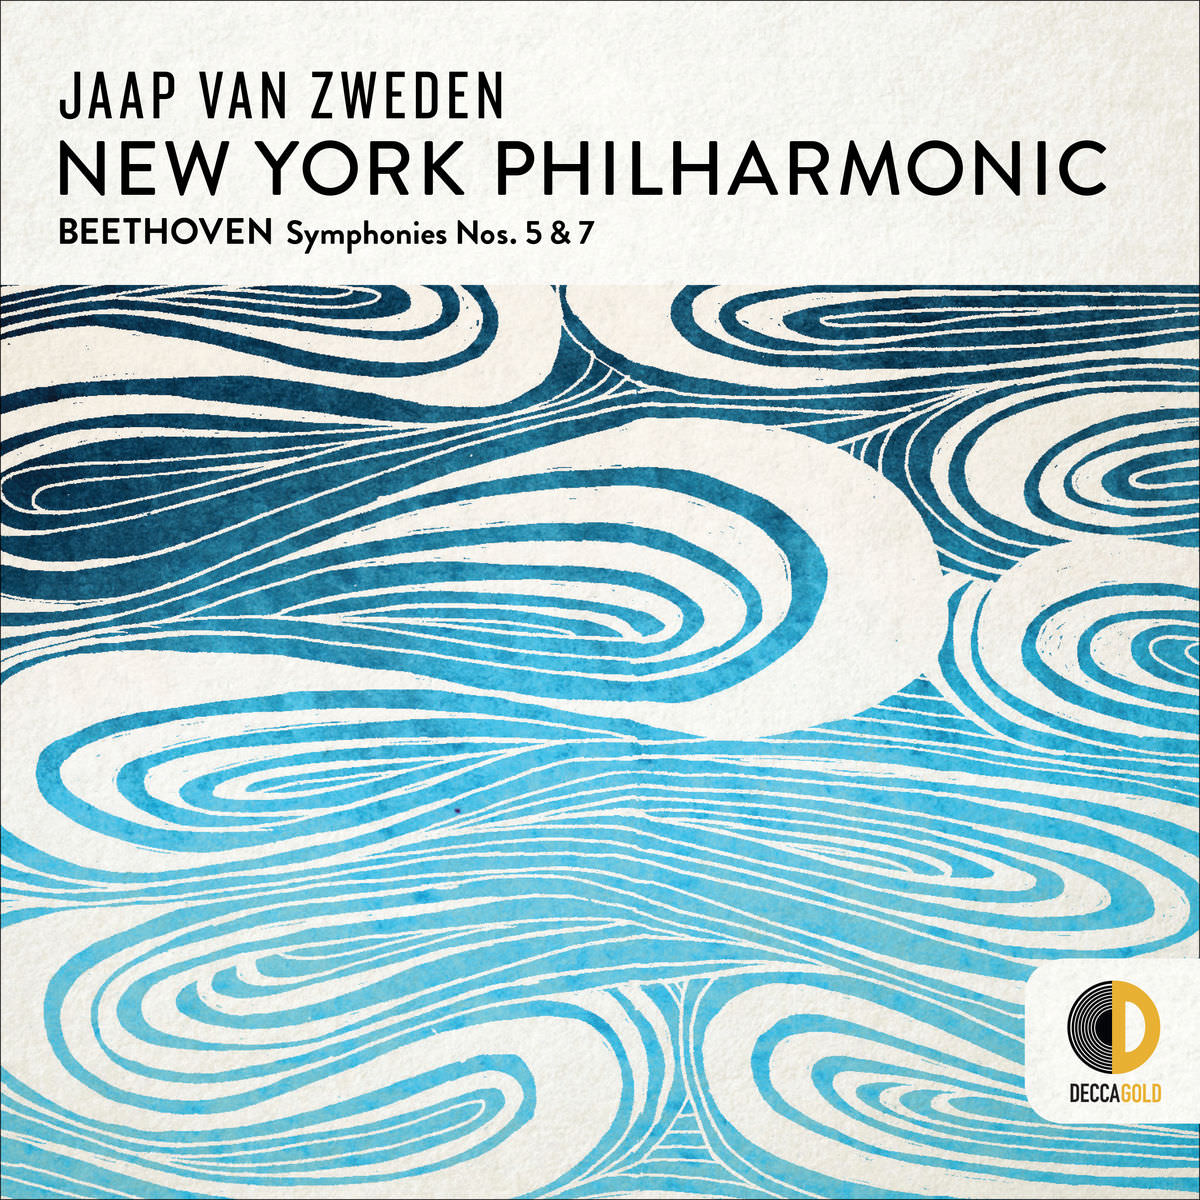 New York Philharmonic & Jaap van Zweden - Beethoven: Symphonies Nos. 5 & 7 (2018) [FLAC 24bit/96kHz]